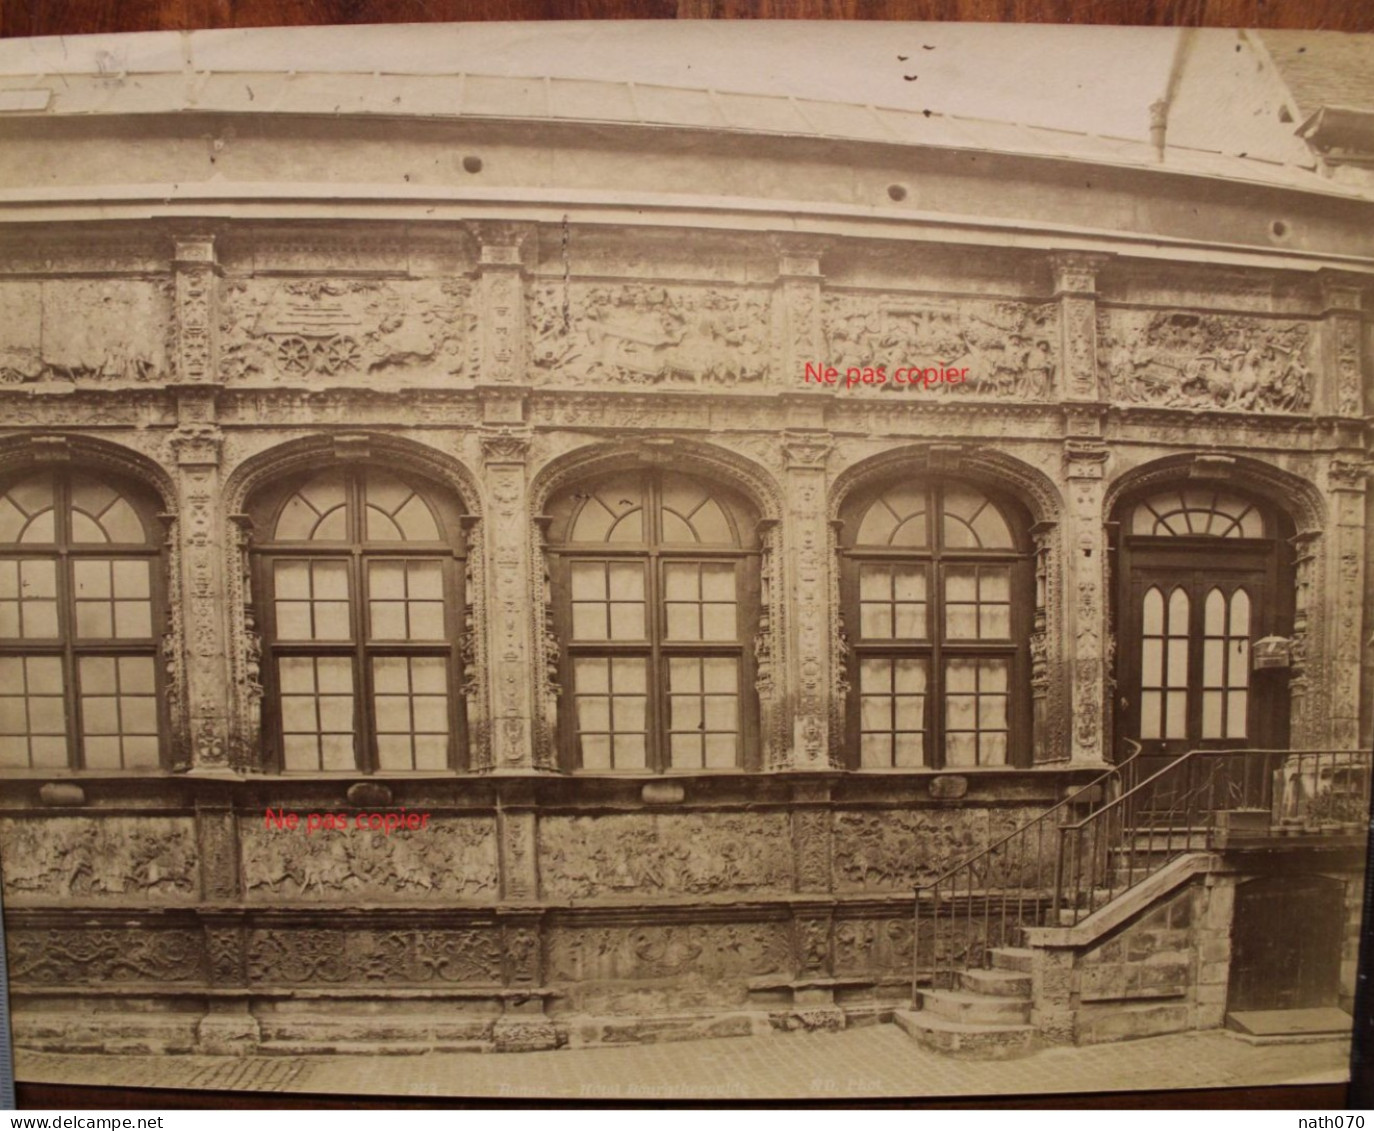 Photo 1880's Tirage Albuminé Albumen Print Vintage Rouen Hôtel De Bourgtheroulde - Lieux